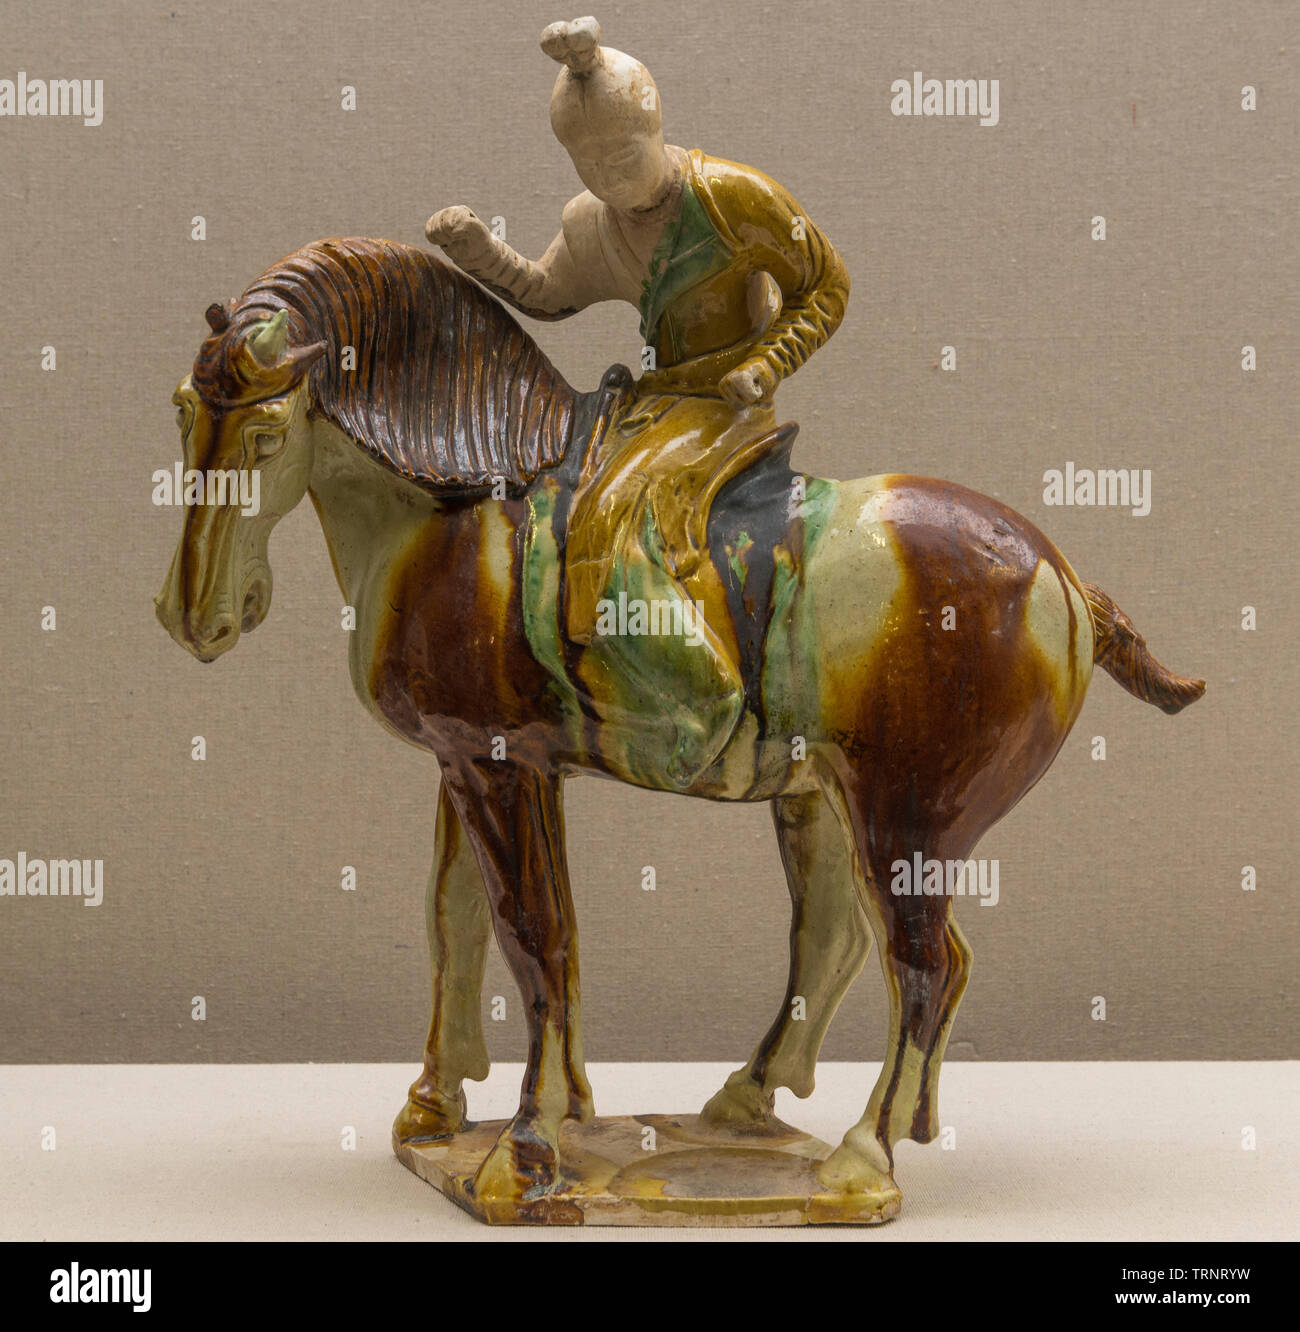 La poterie vernissée tricolore du prince de Polo Player. 618 AD - 907 AD (dynastie des Tang) - Luoyang reliques et la culture Institut de recherche de l'archéologie. Banque D'Images